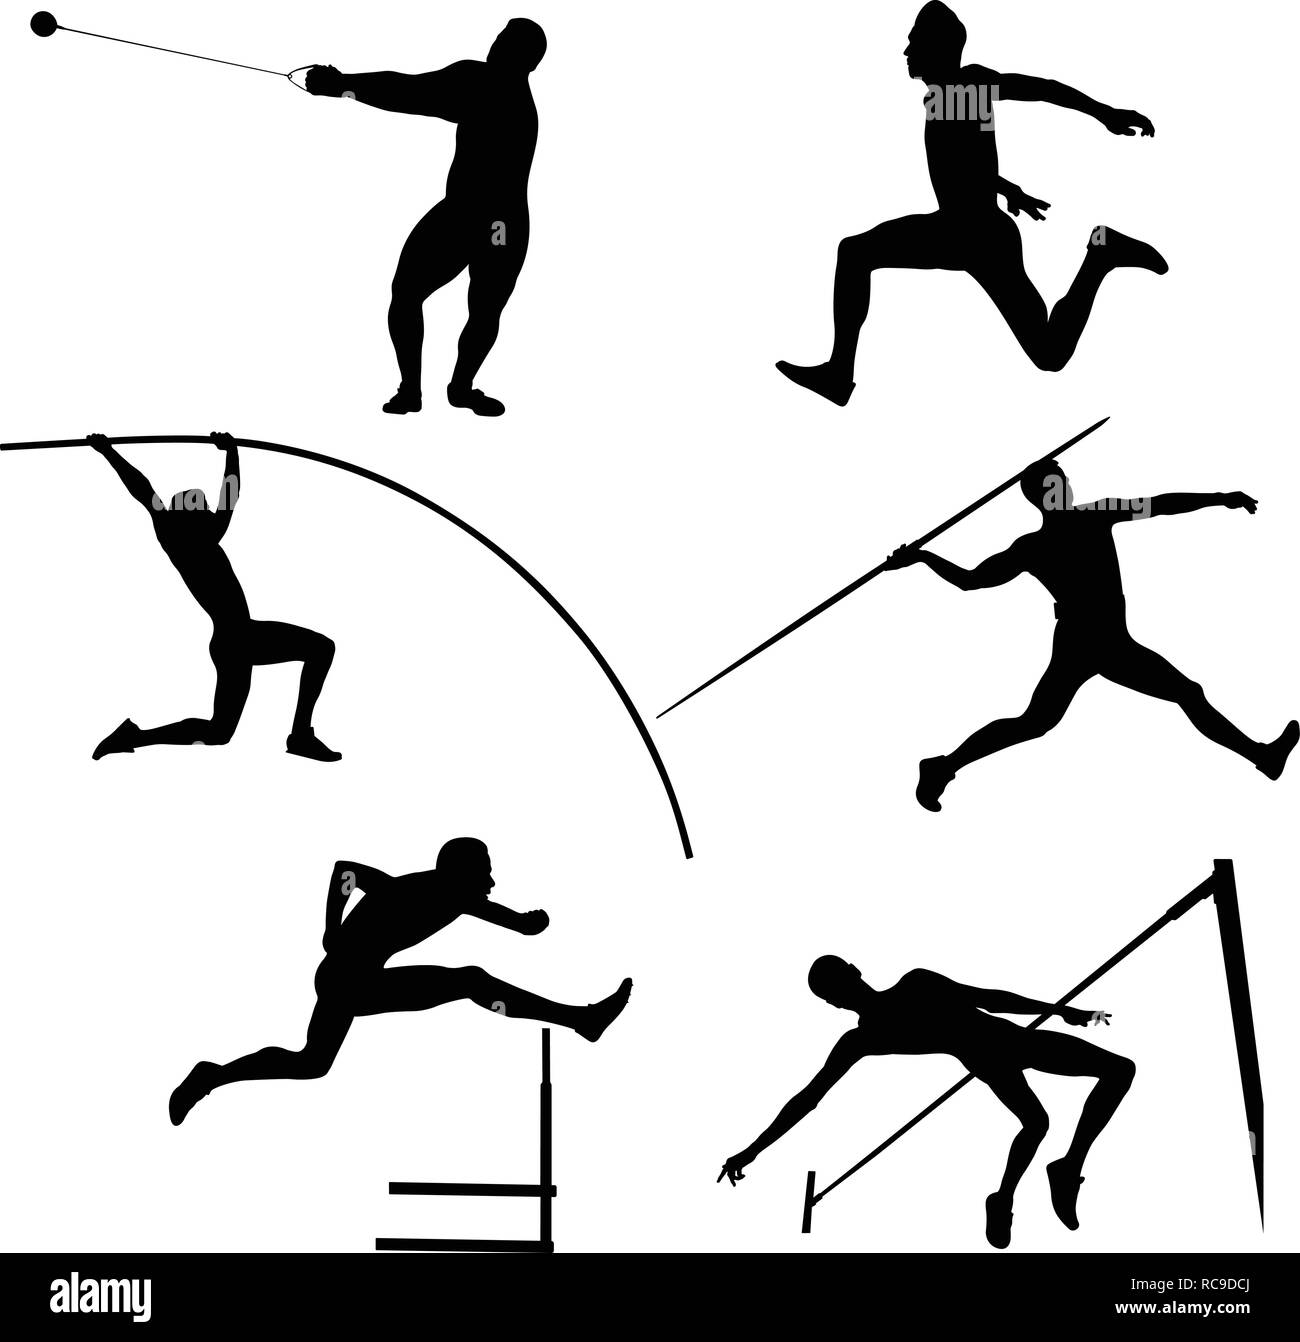 Définissez les athlètes athlétisme hommes silhouette noire Illustration de Vecteur